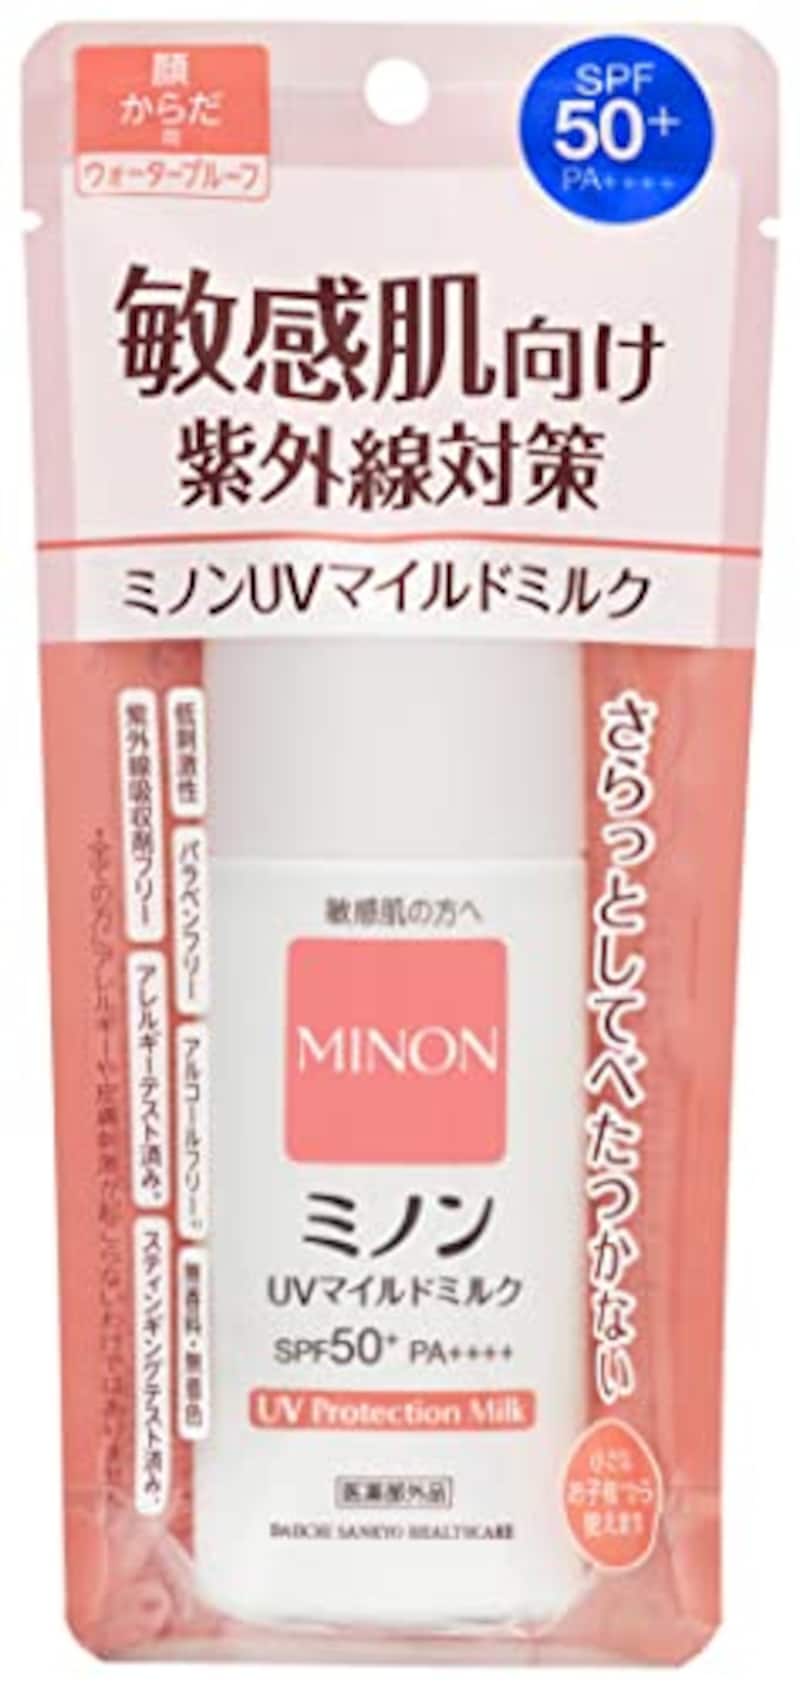 MINON（ミノン）,UVマイルドミルク